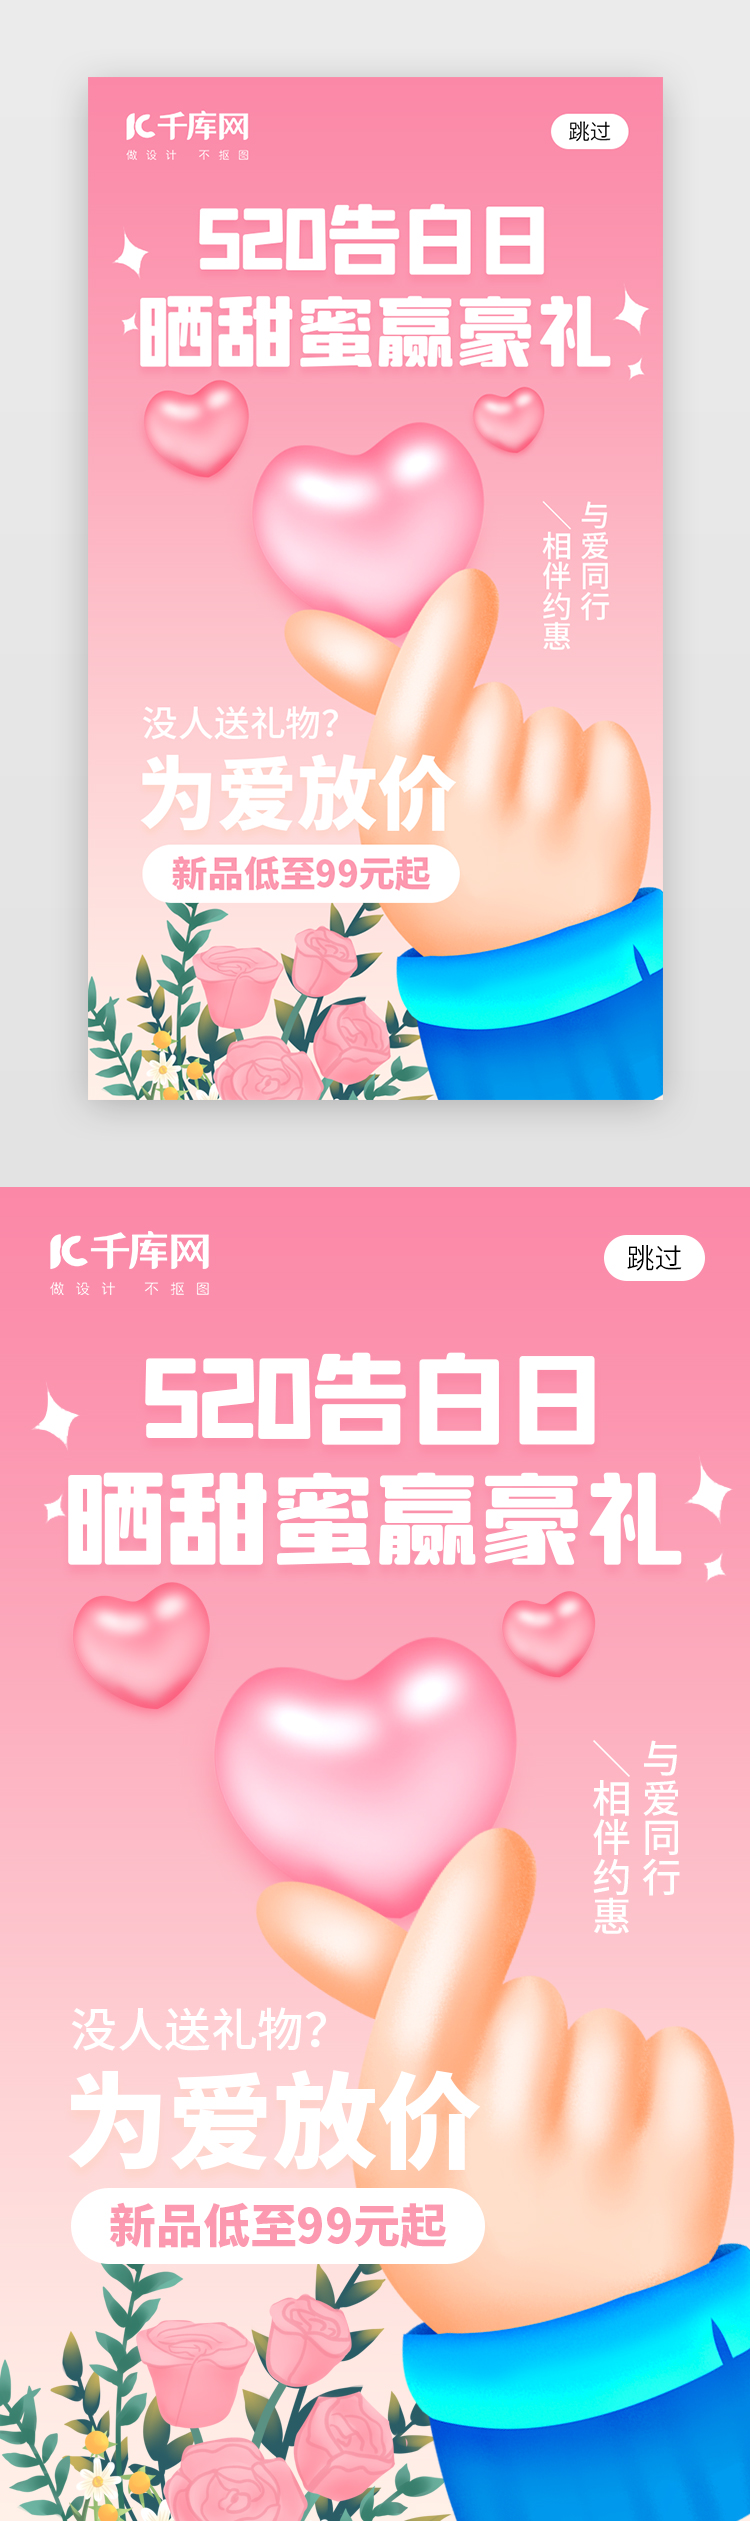 520告白日app闪屏创意粉色渐变比心图片